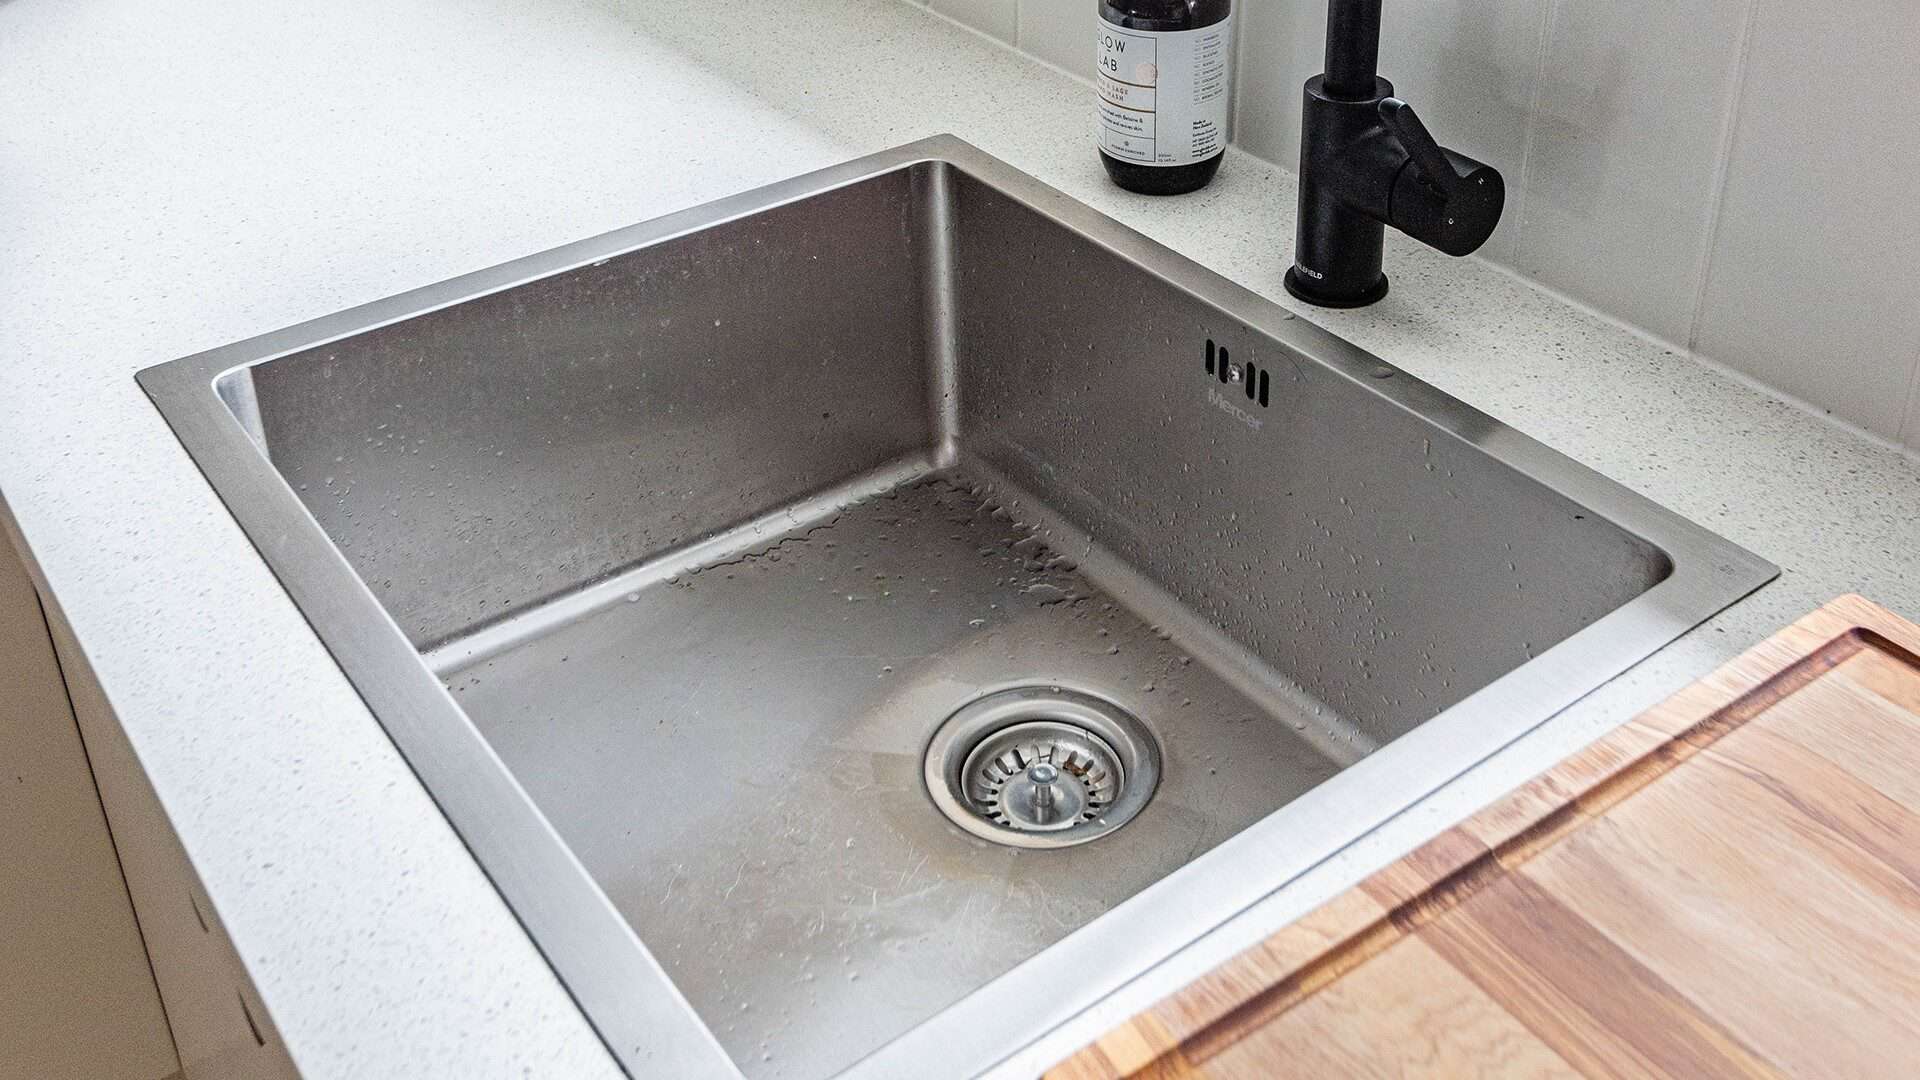  sink-drain